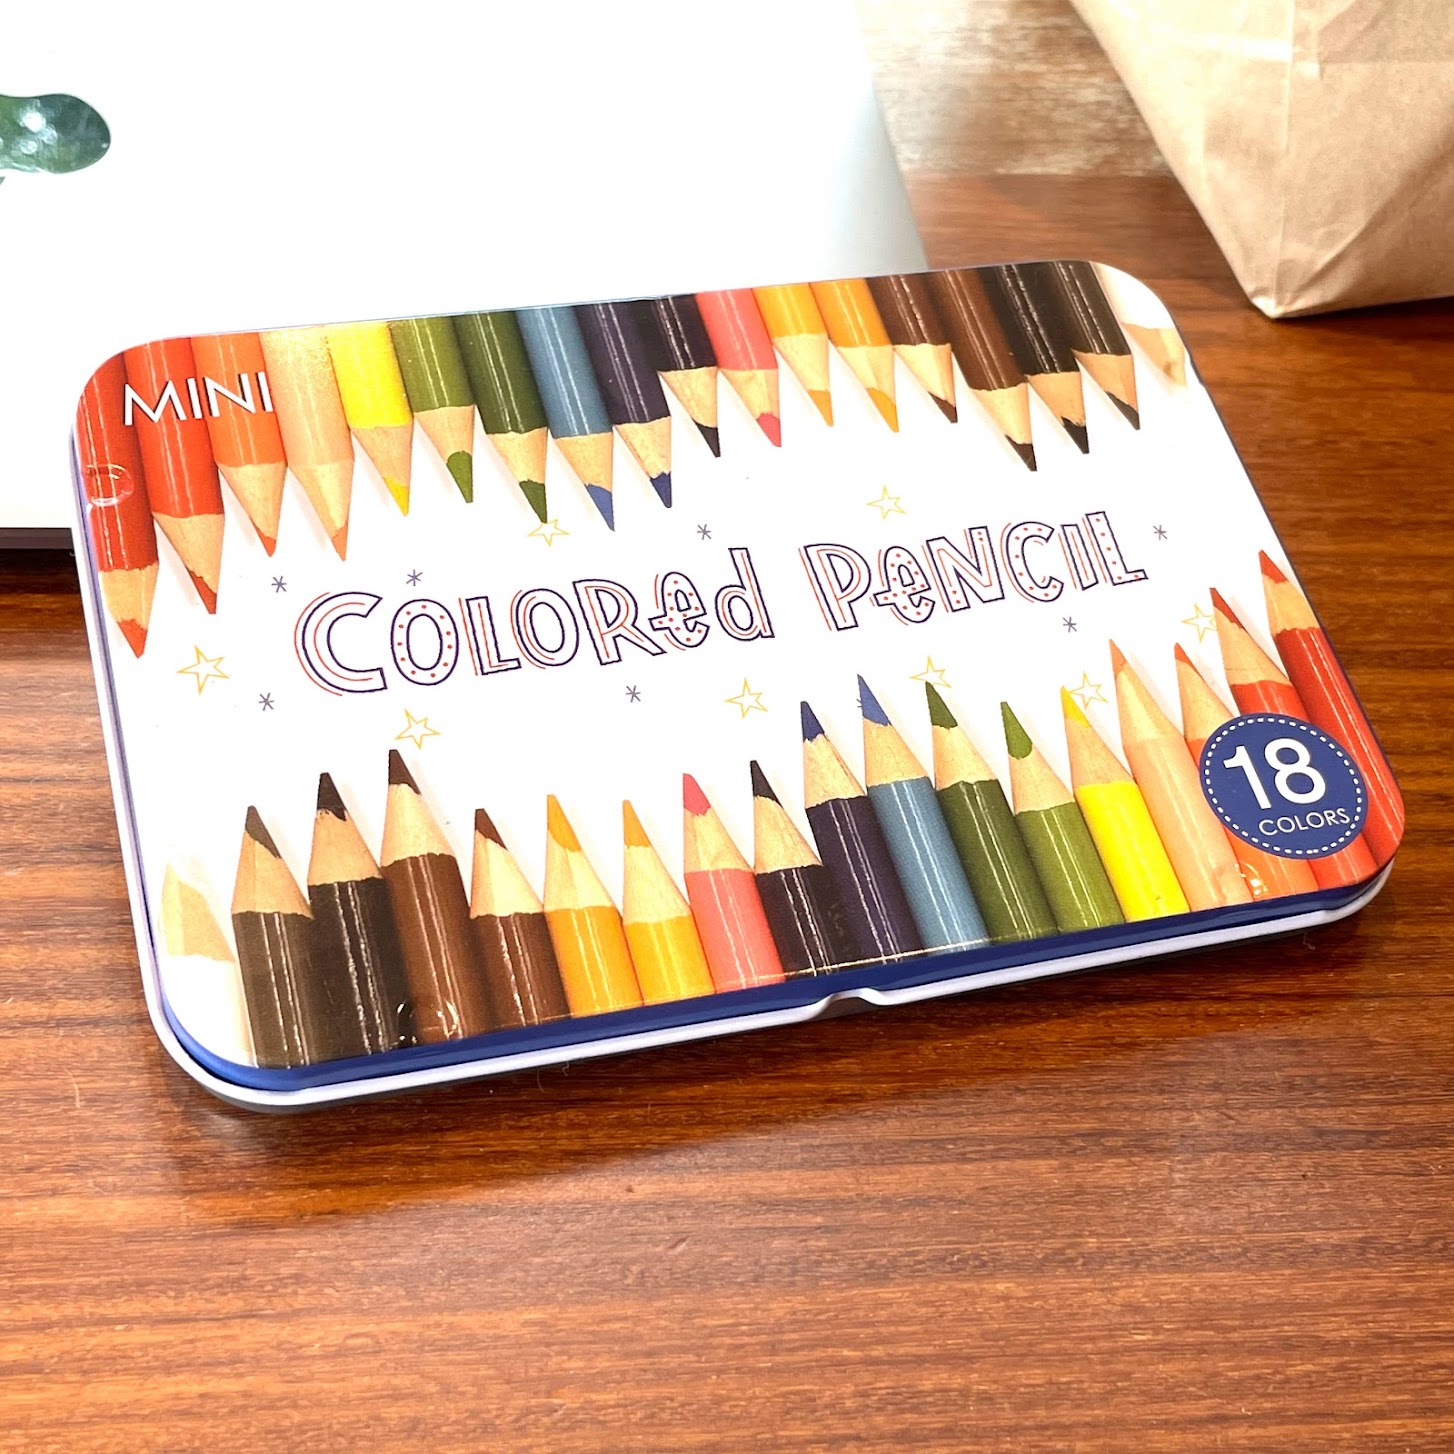 100均文房具 お子さんの屋外スケッチにいかが ダイソーの缶入りミニ色鉛筆18色がおすすめです 猪口フミヒロ Yahoo Japan クリエイターズプログラム